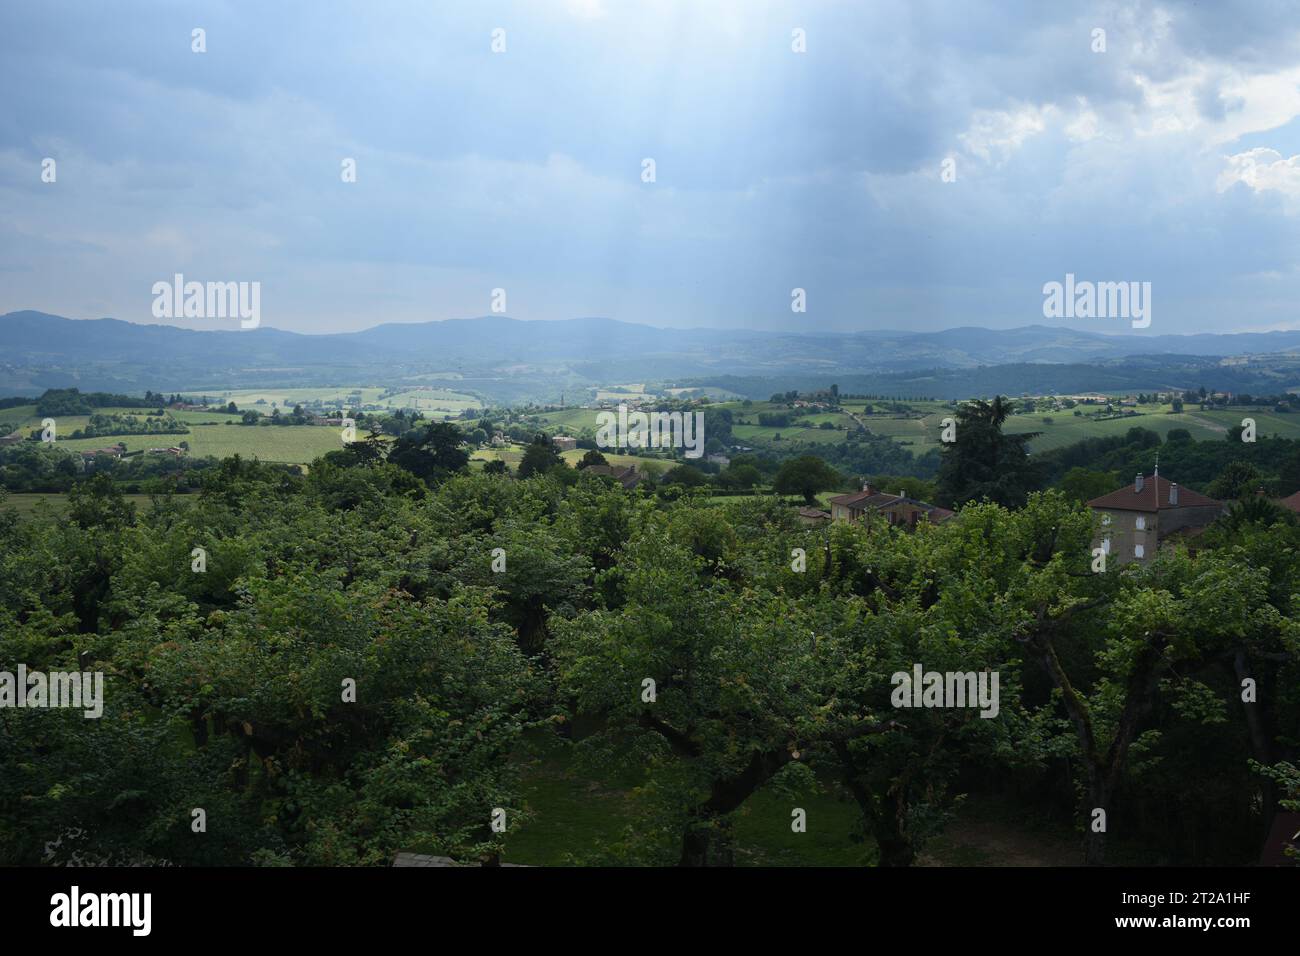 La pluie grouille et la lumière tamisée, regardant à travers le verger de cerisiers dans la vallée verdoyante, les terres agricoles et les collines ondulantes, le Bois-d'Oingt, France Banque D'Images